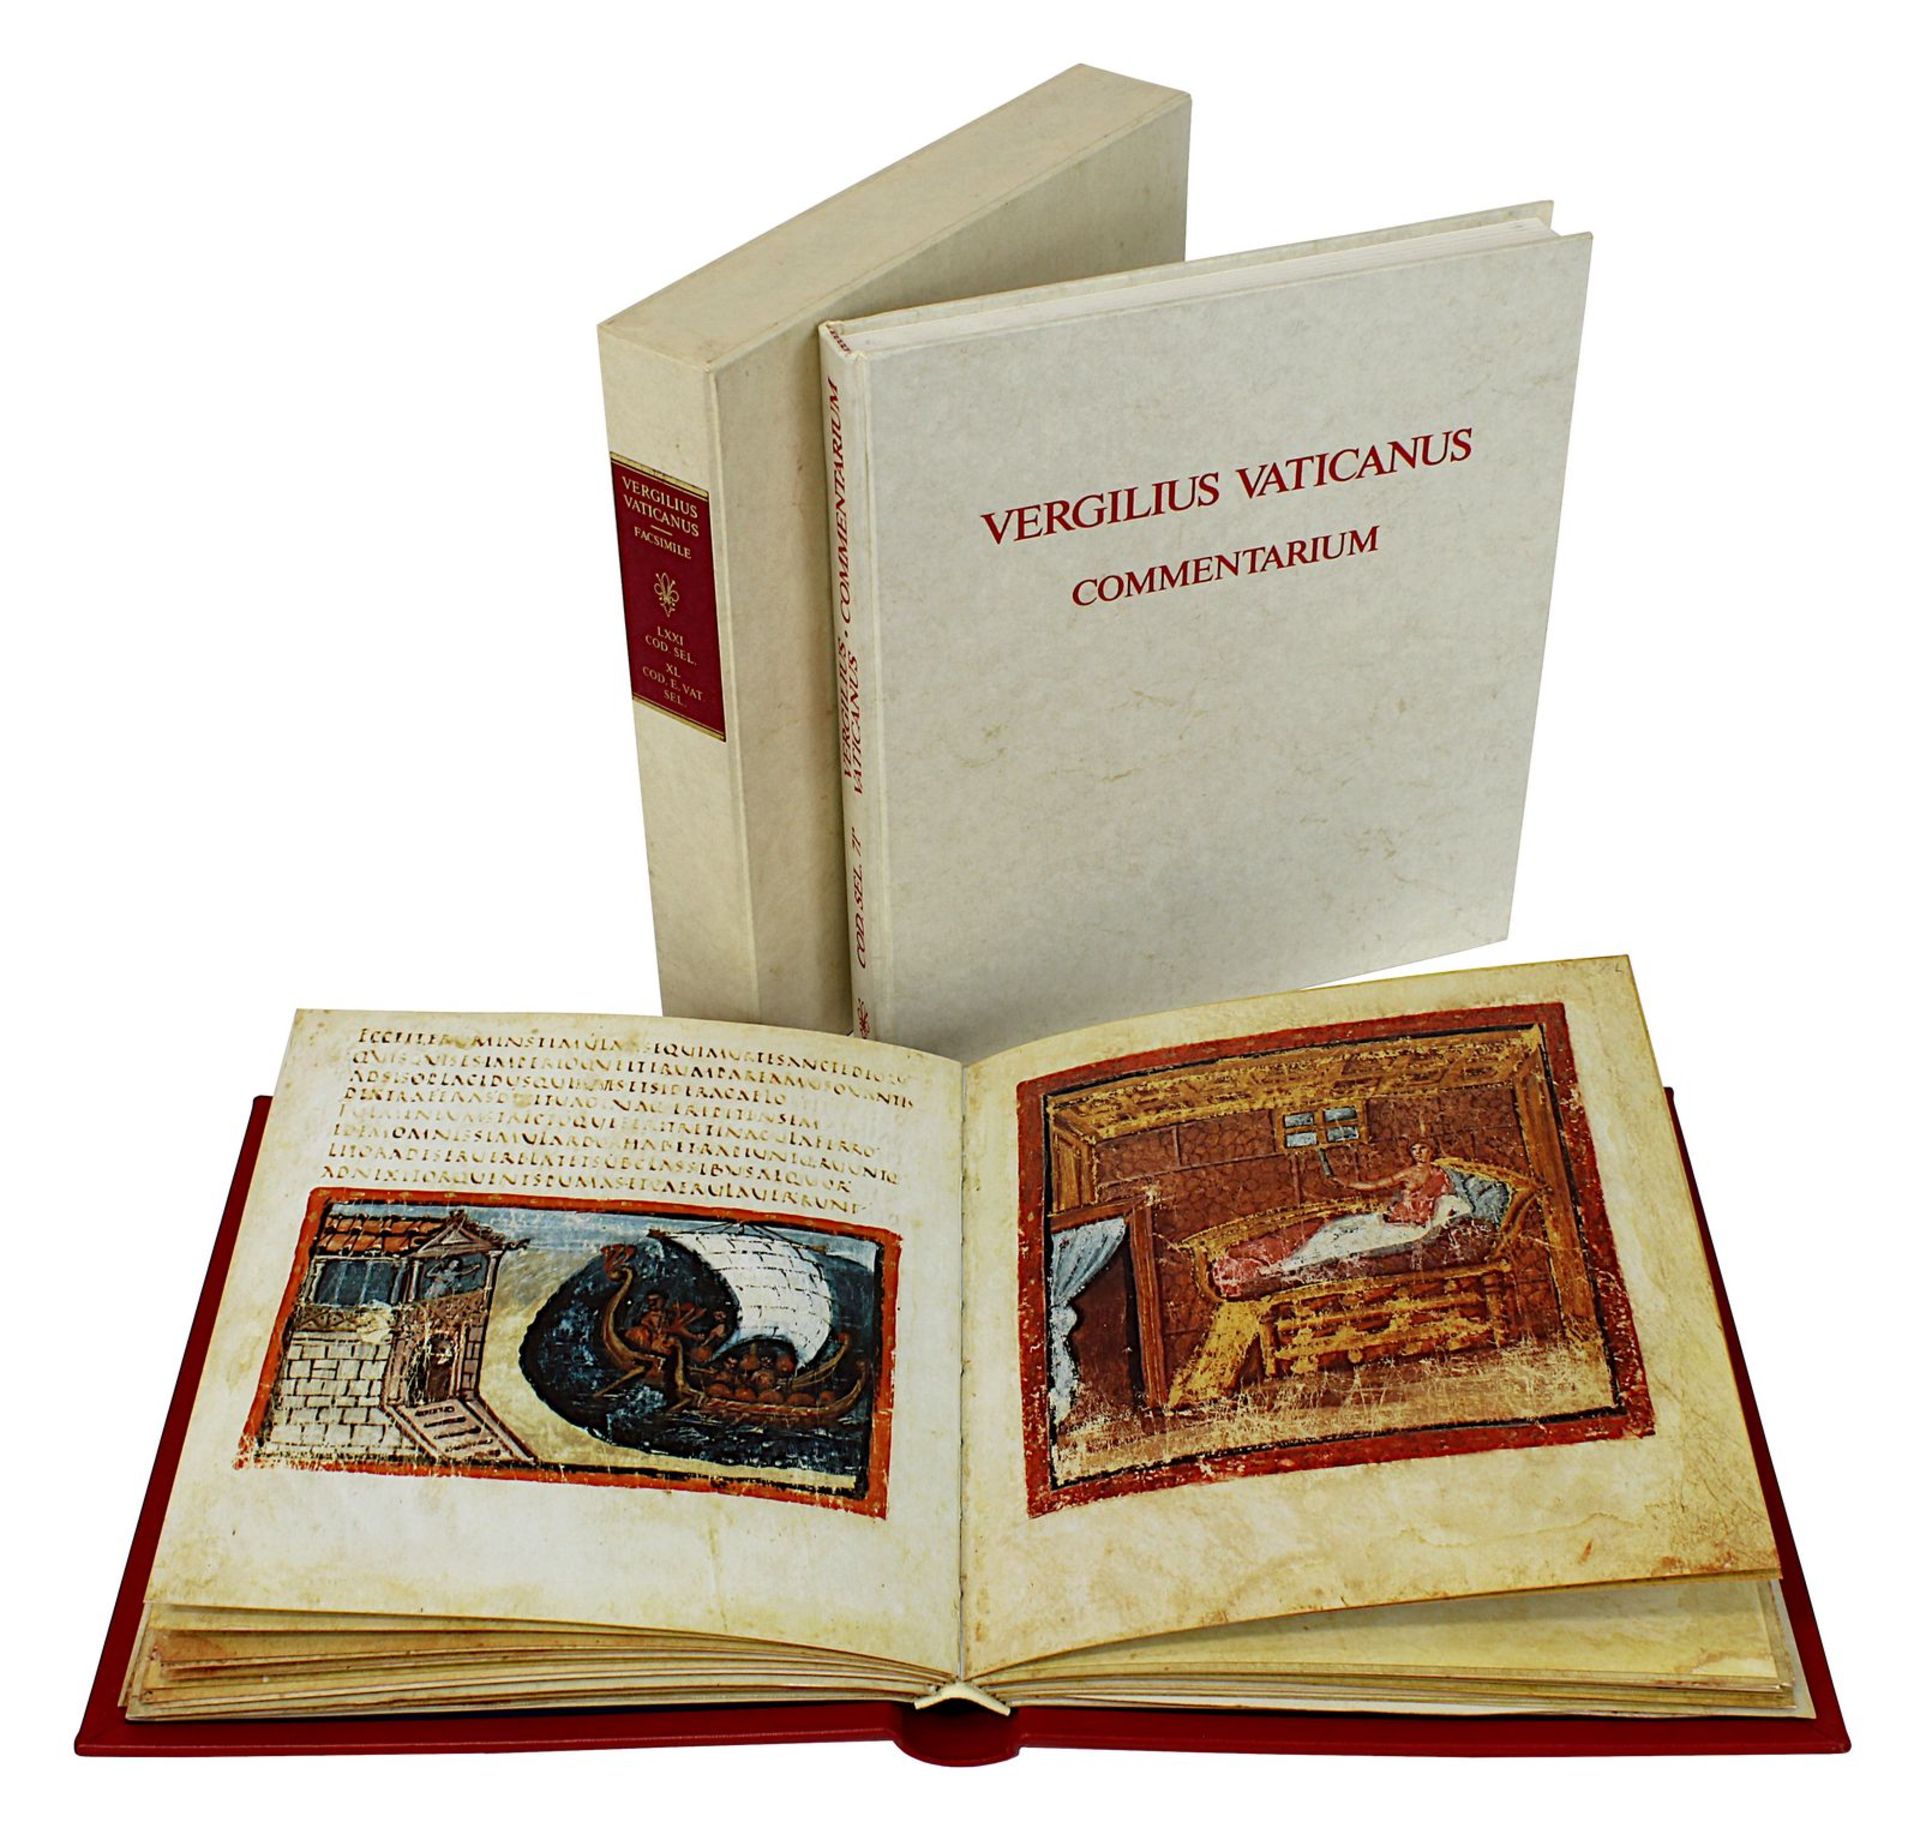 Faksimileausgabe u. "Commentarium" des "Vergilius Vaticanus", vollst. farbige Faksimileausgabe im